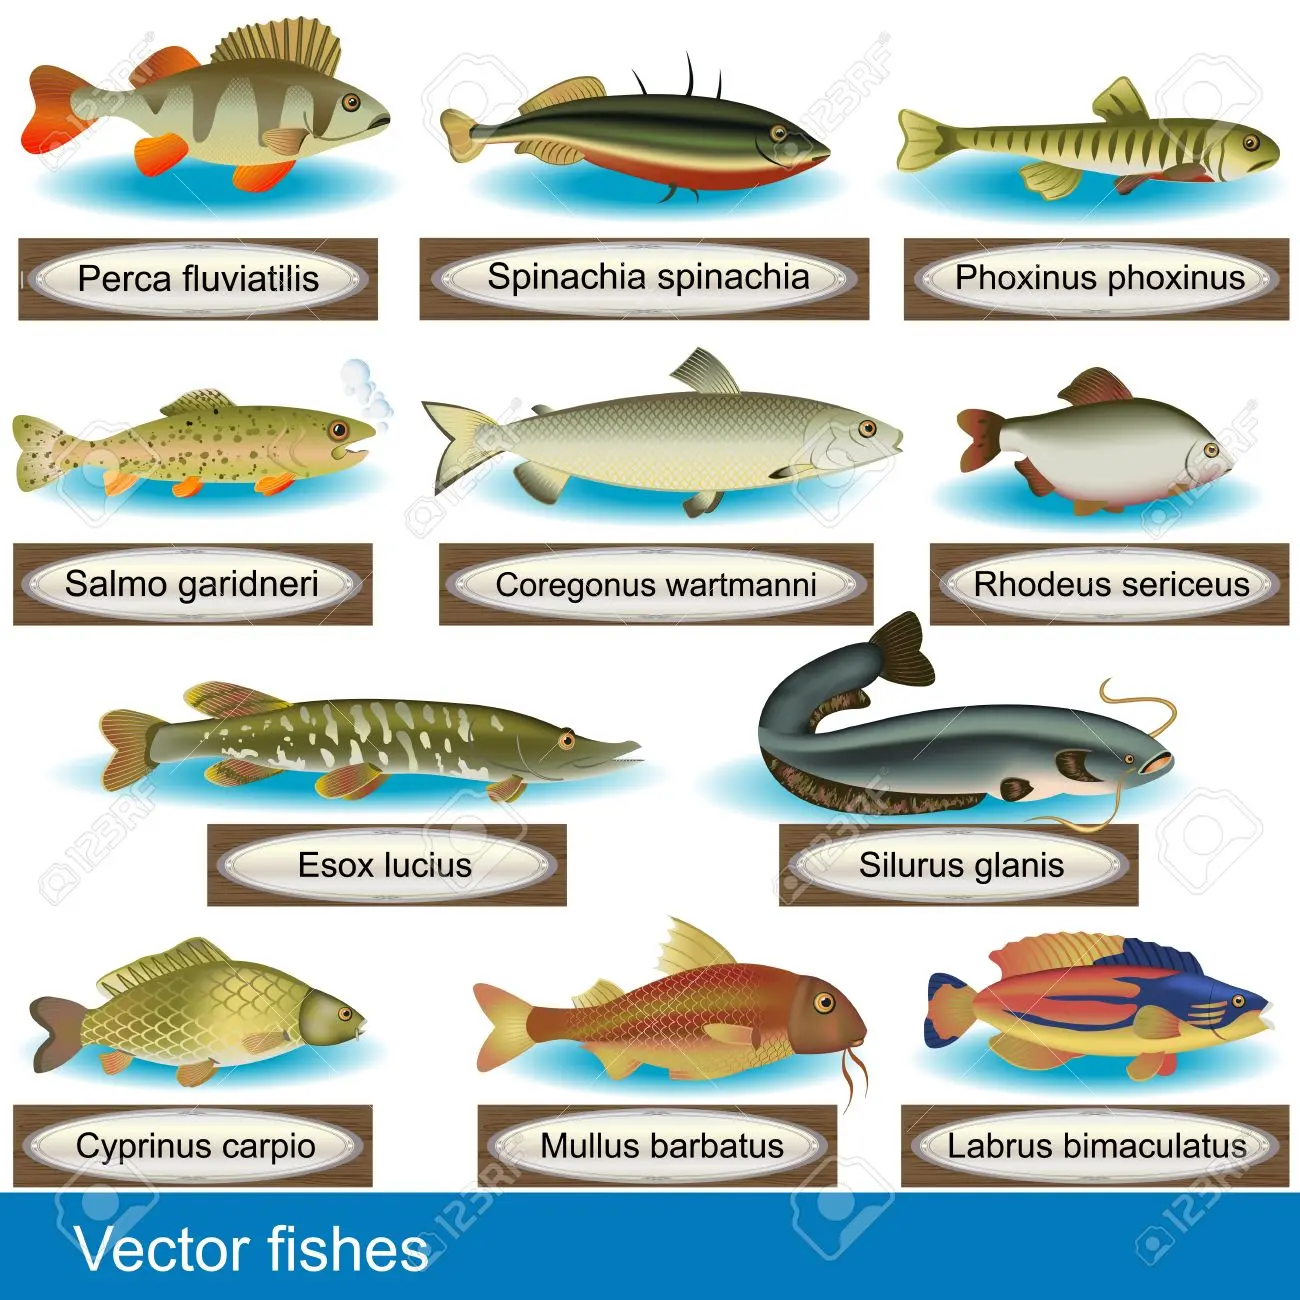 tipos de pescados y sus nombres - Qué pescados se venden en una pescaderia